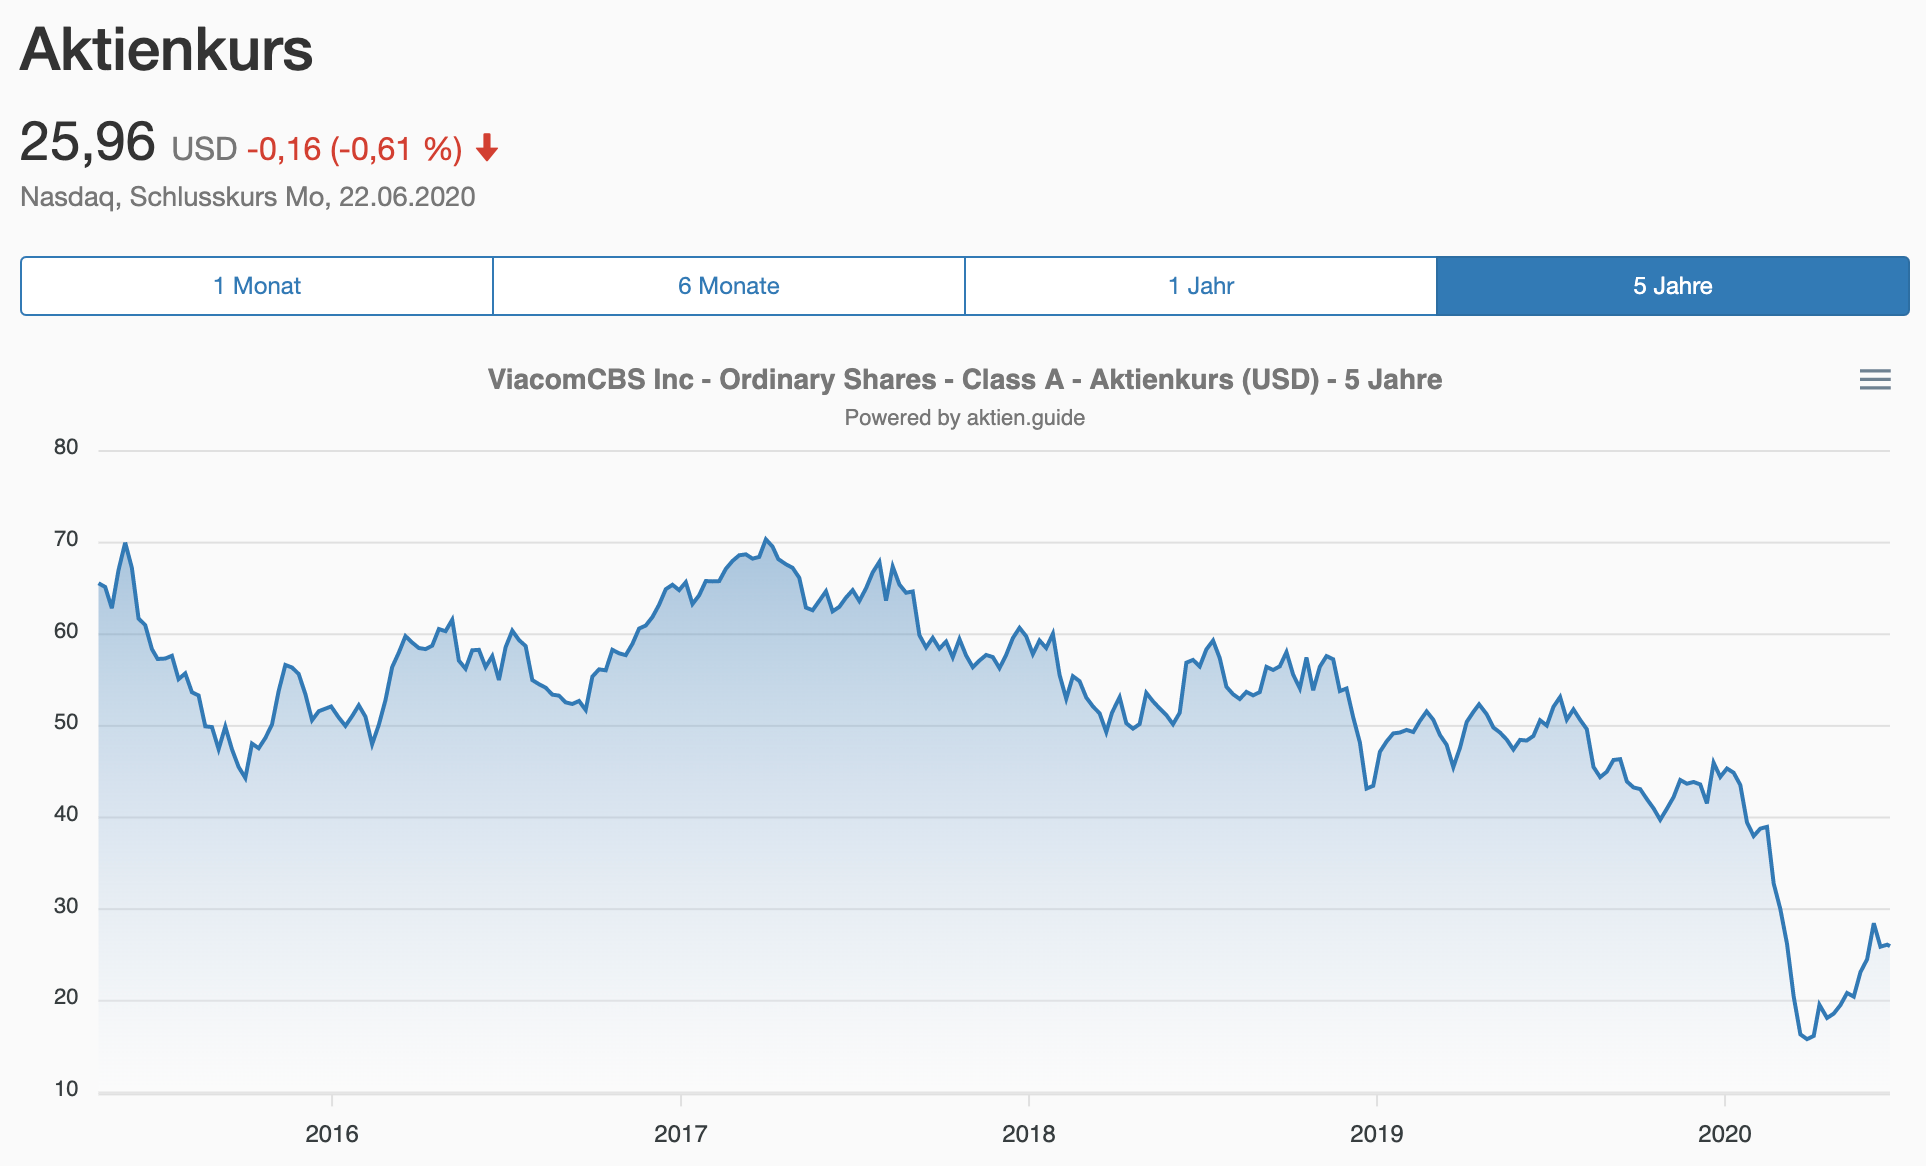 Analyse der ViacomCBS Aktie - Aktienkursentwicklung 5 Jahre Übersicht